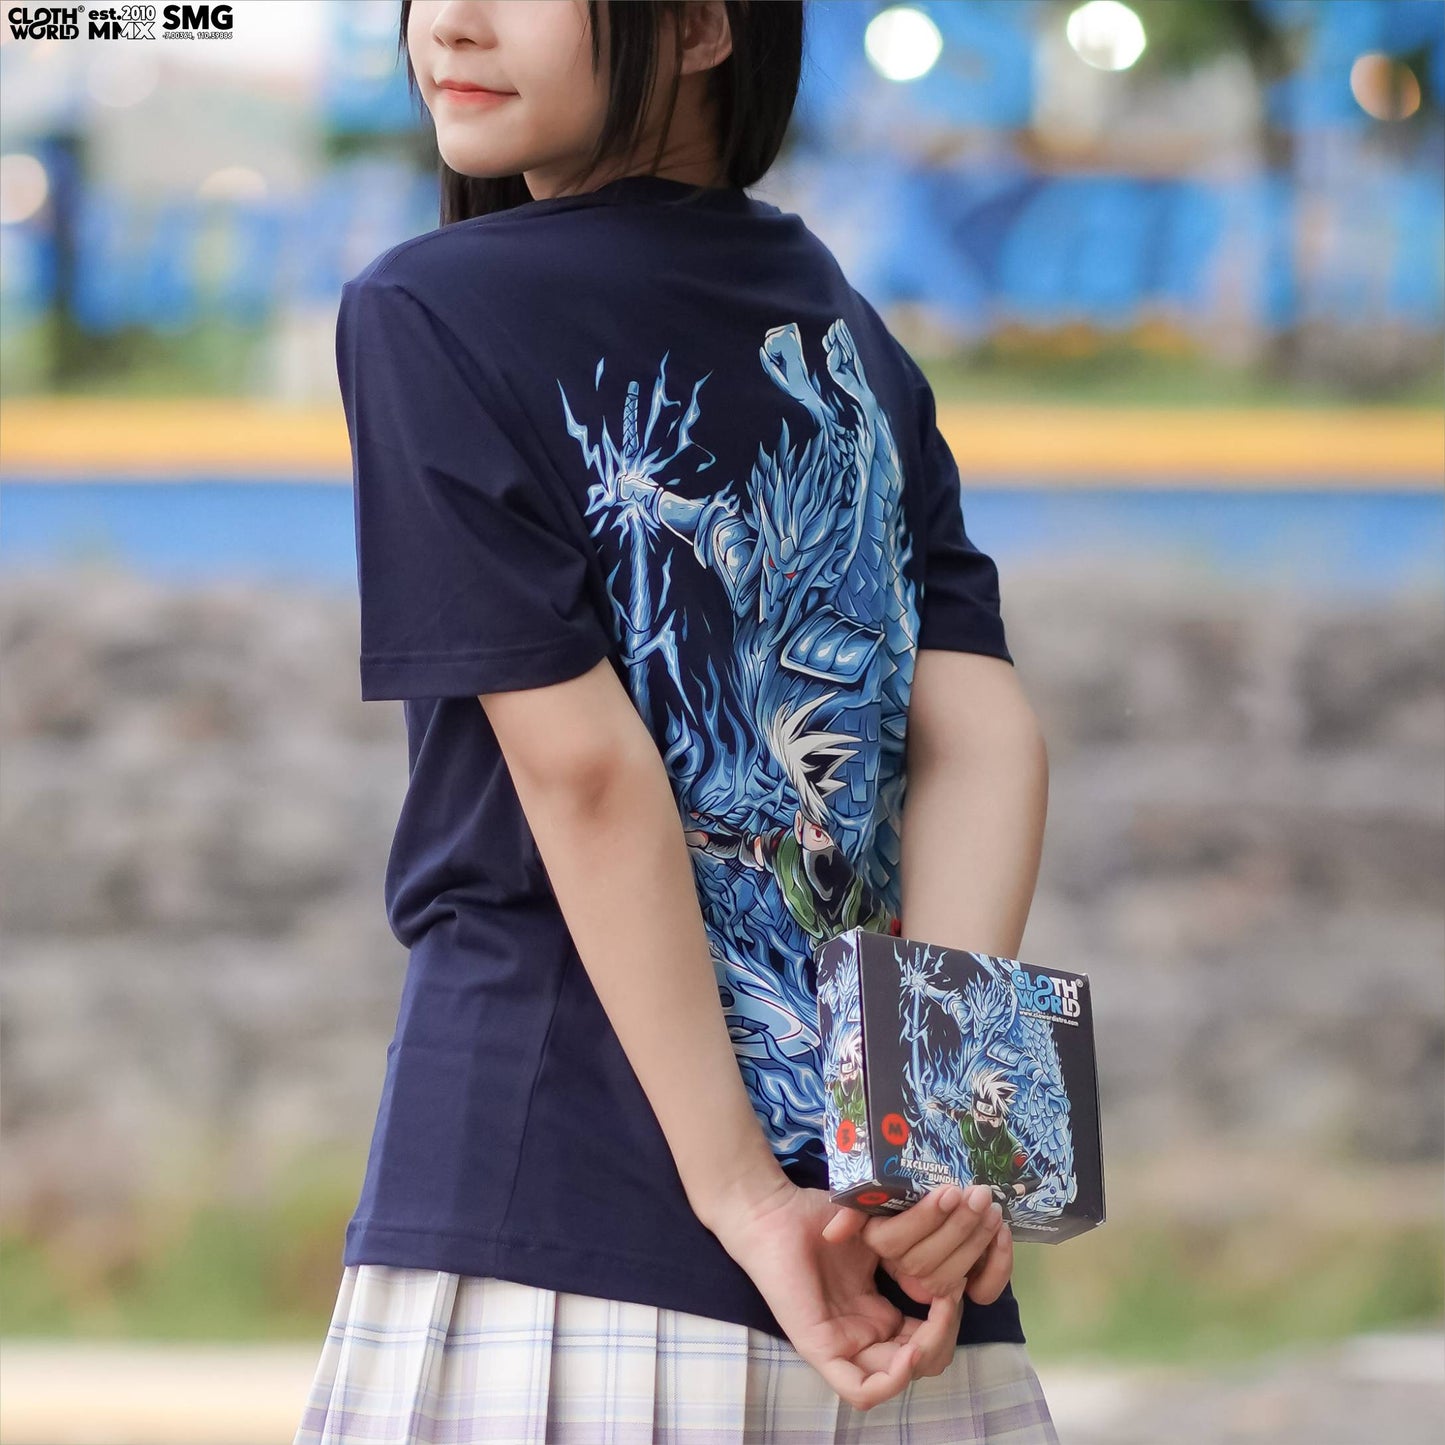 Hatake Kakashi Perfect Susanoo T-Shirt